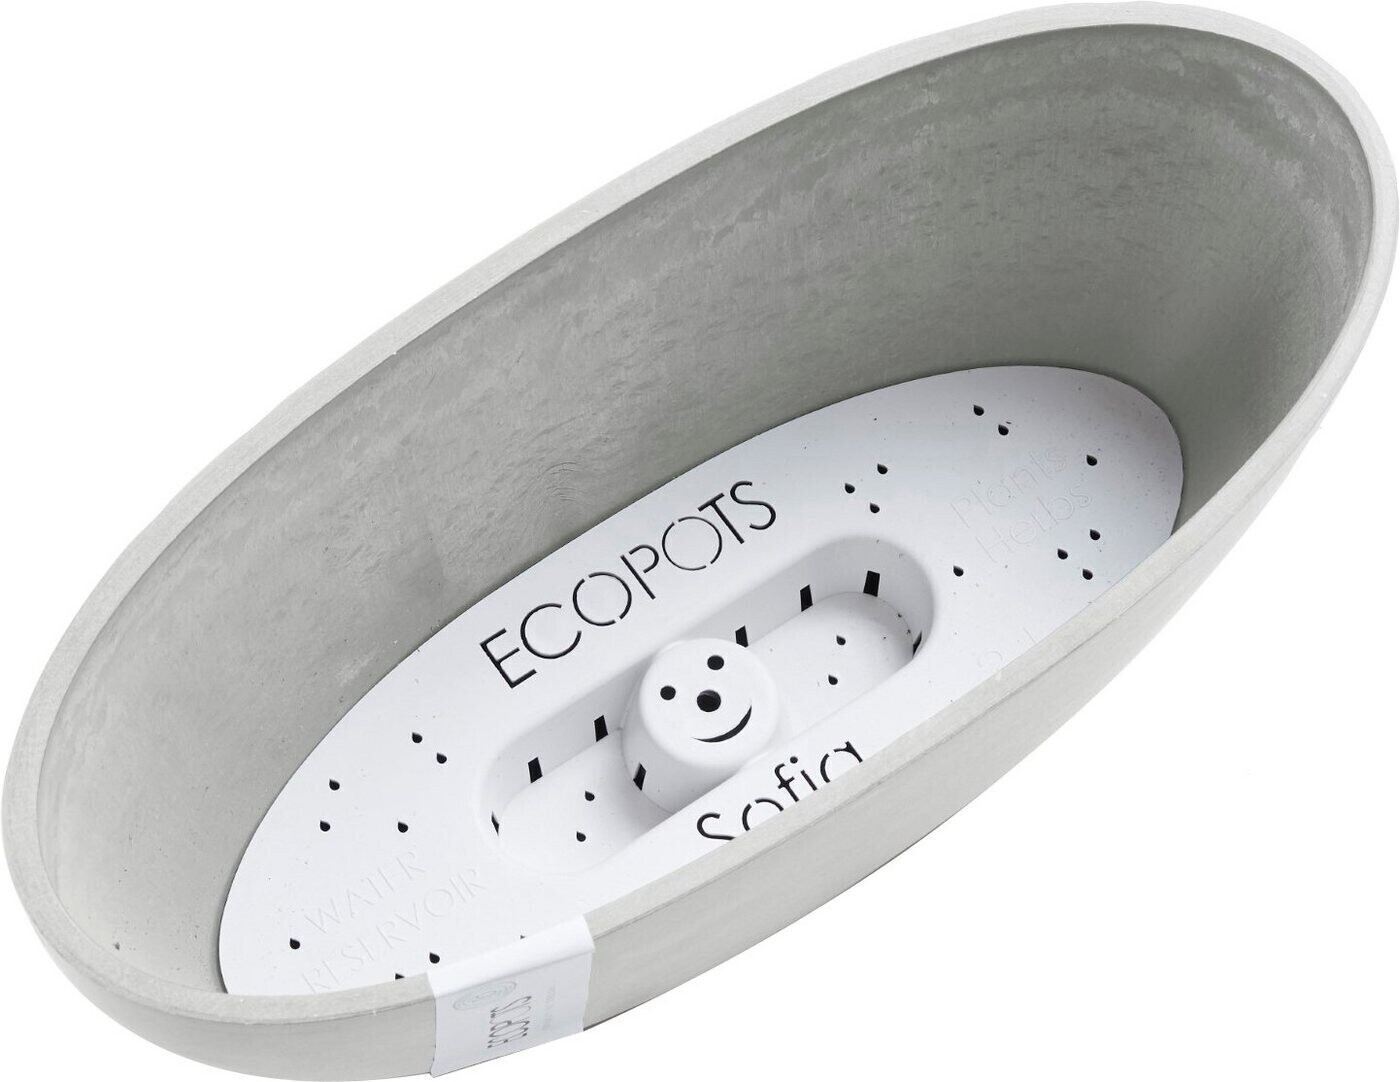 Ecopots Sofia BxTxH: | cm € 13x13x13,5 bei 17,99 Preisvergleich weiß/grau ab